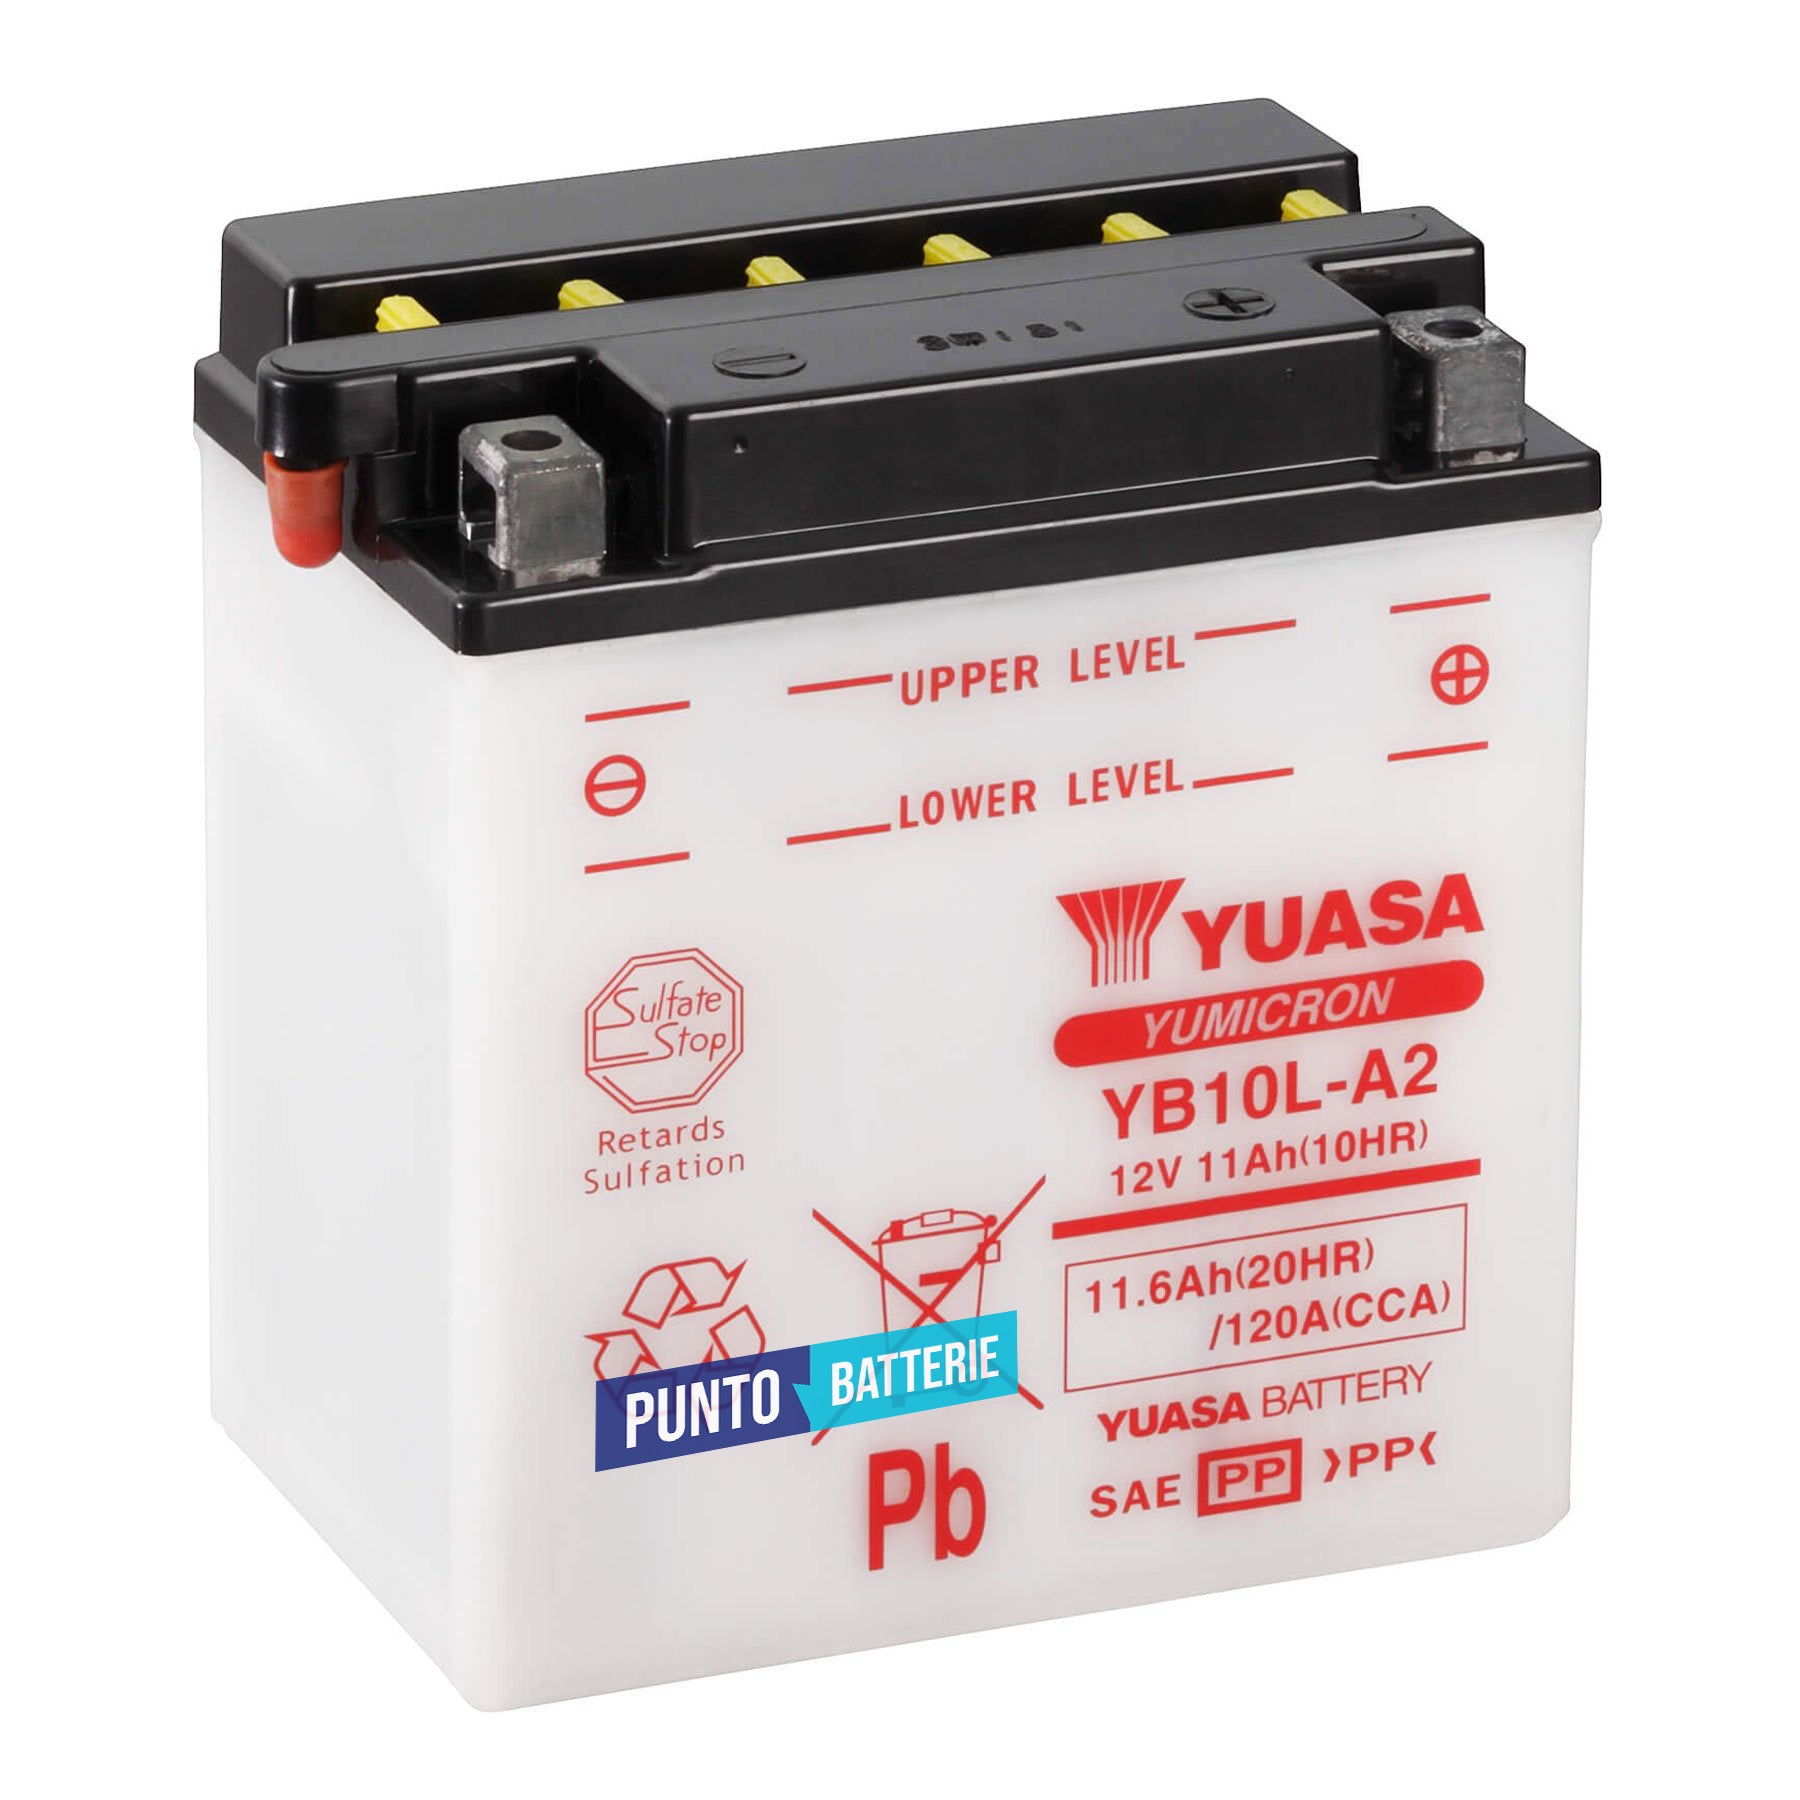 Batteria originale Yuasa YuMicron YB10L-A2, dimensioni 135 x 90 x 145, polo positivo a destra, 12 volt, 11 amperora, 120 ampere. Batteria per moto, scooter e powersport.